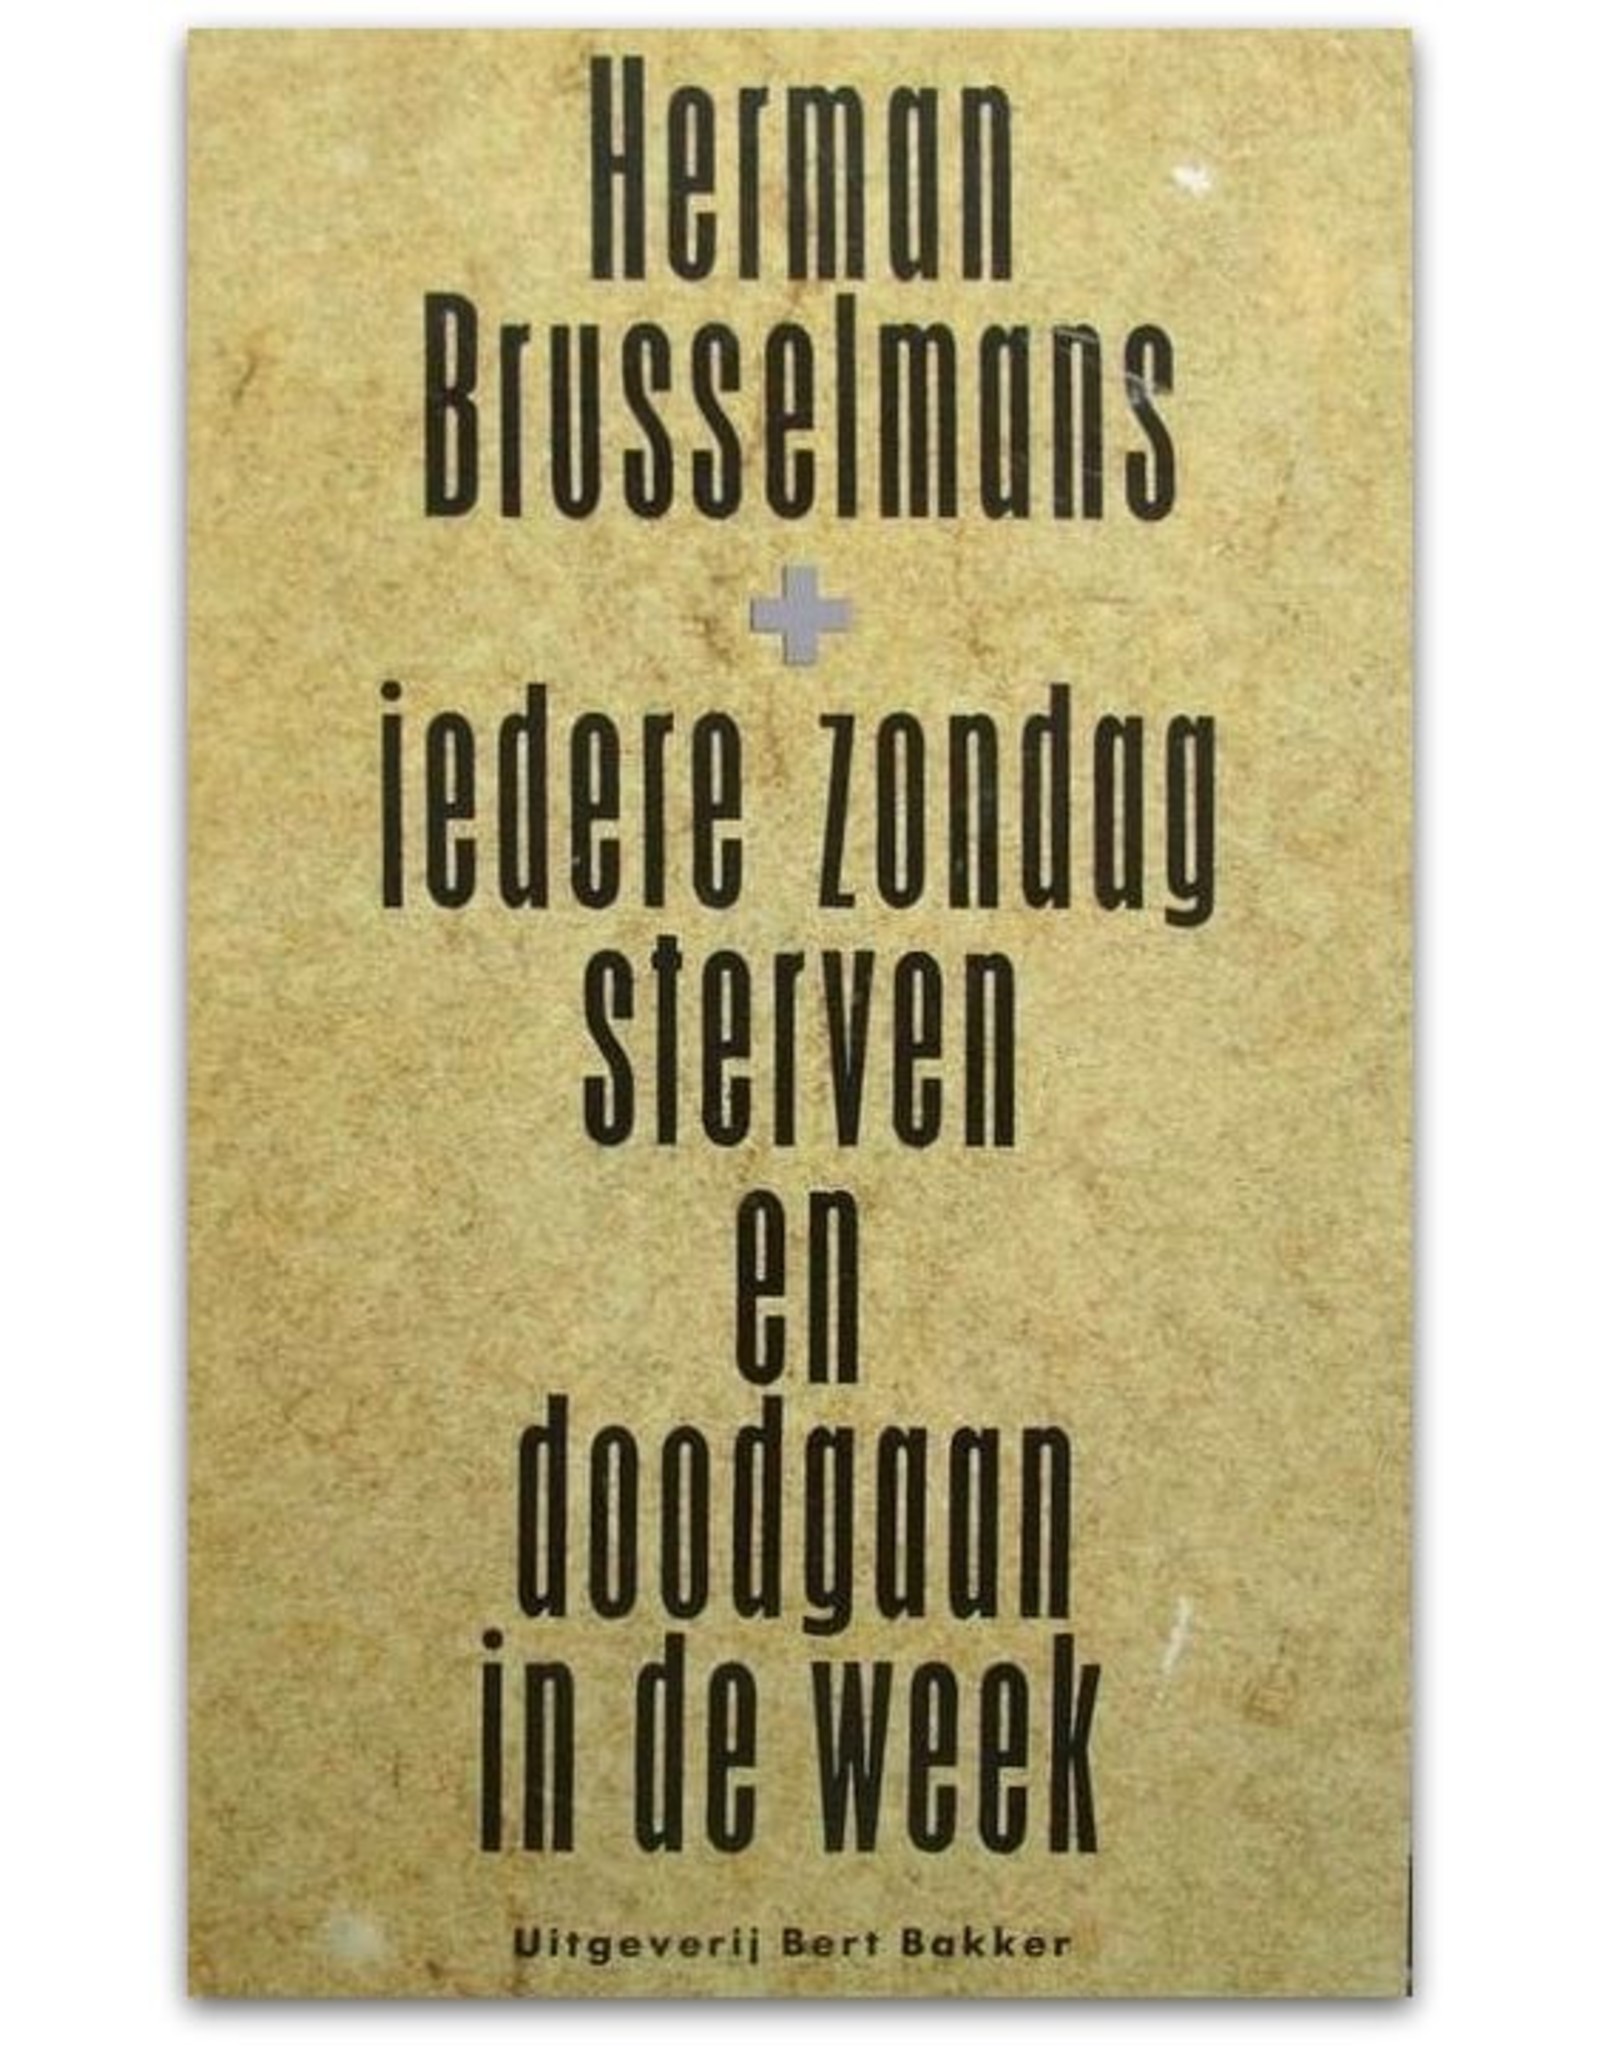 Herman Brusselmans - Iedere zondag sterven en doodgaan in de week